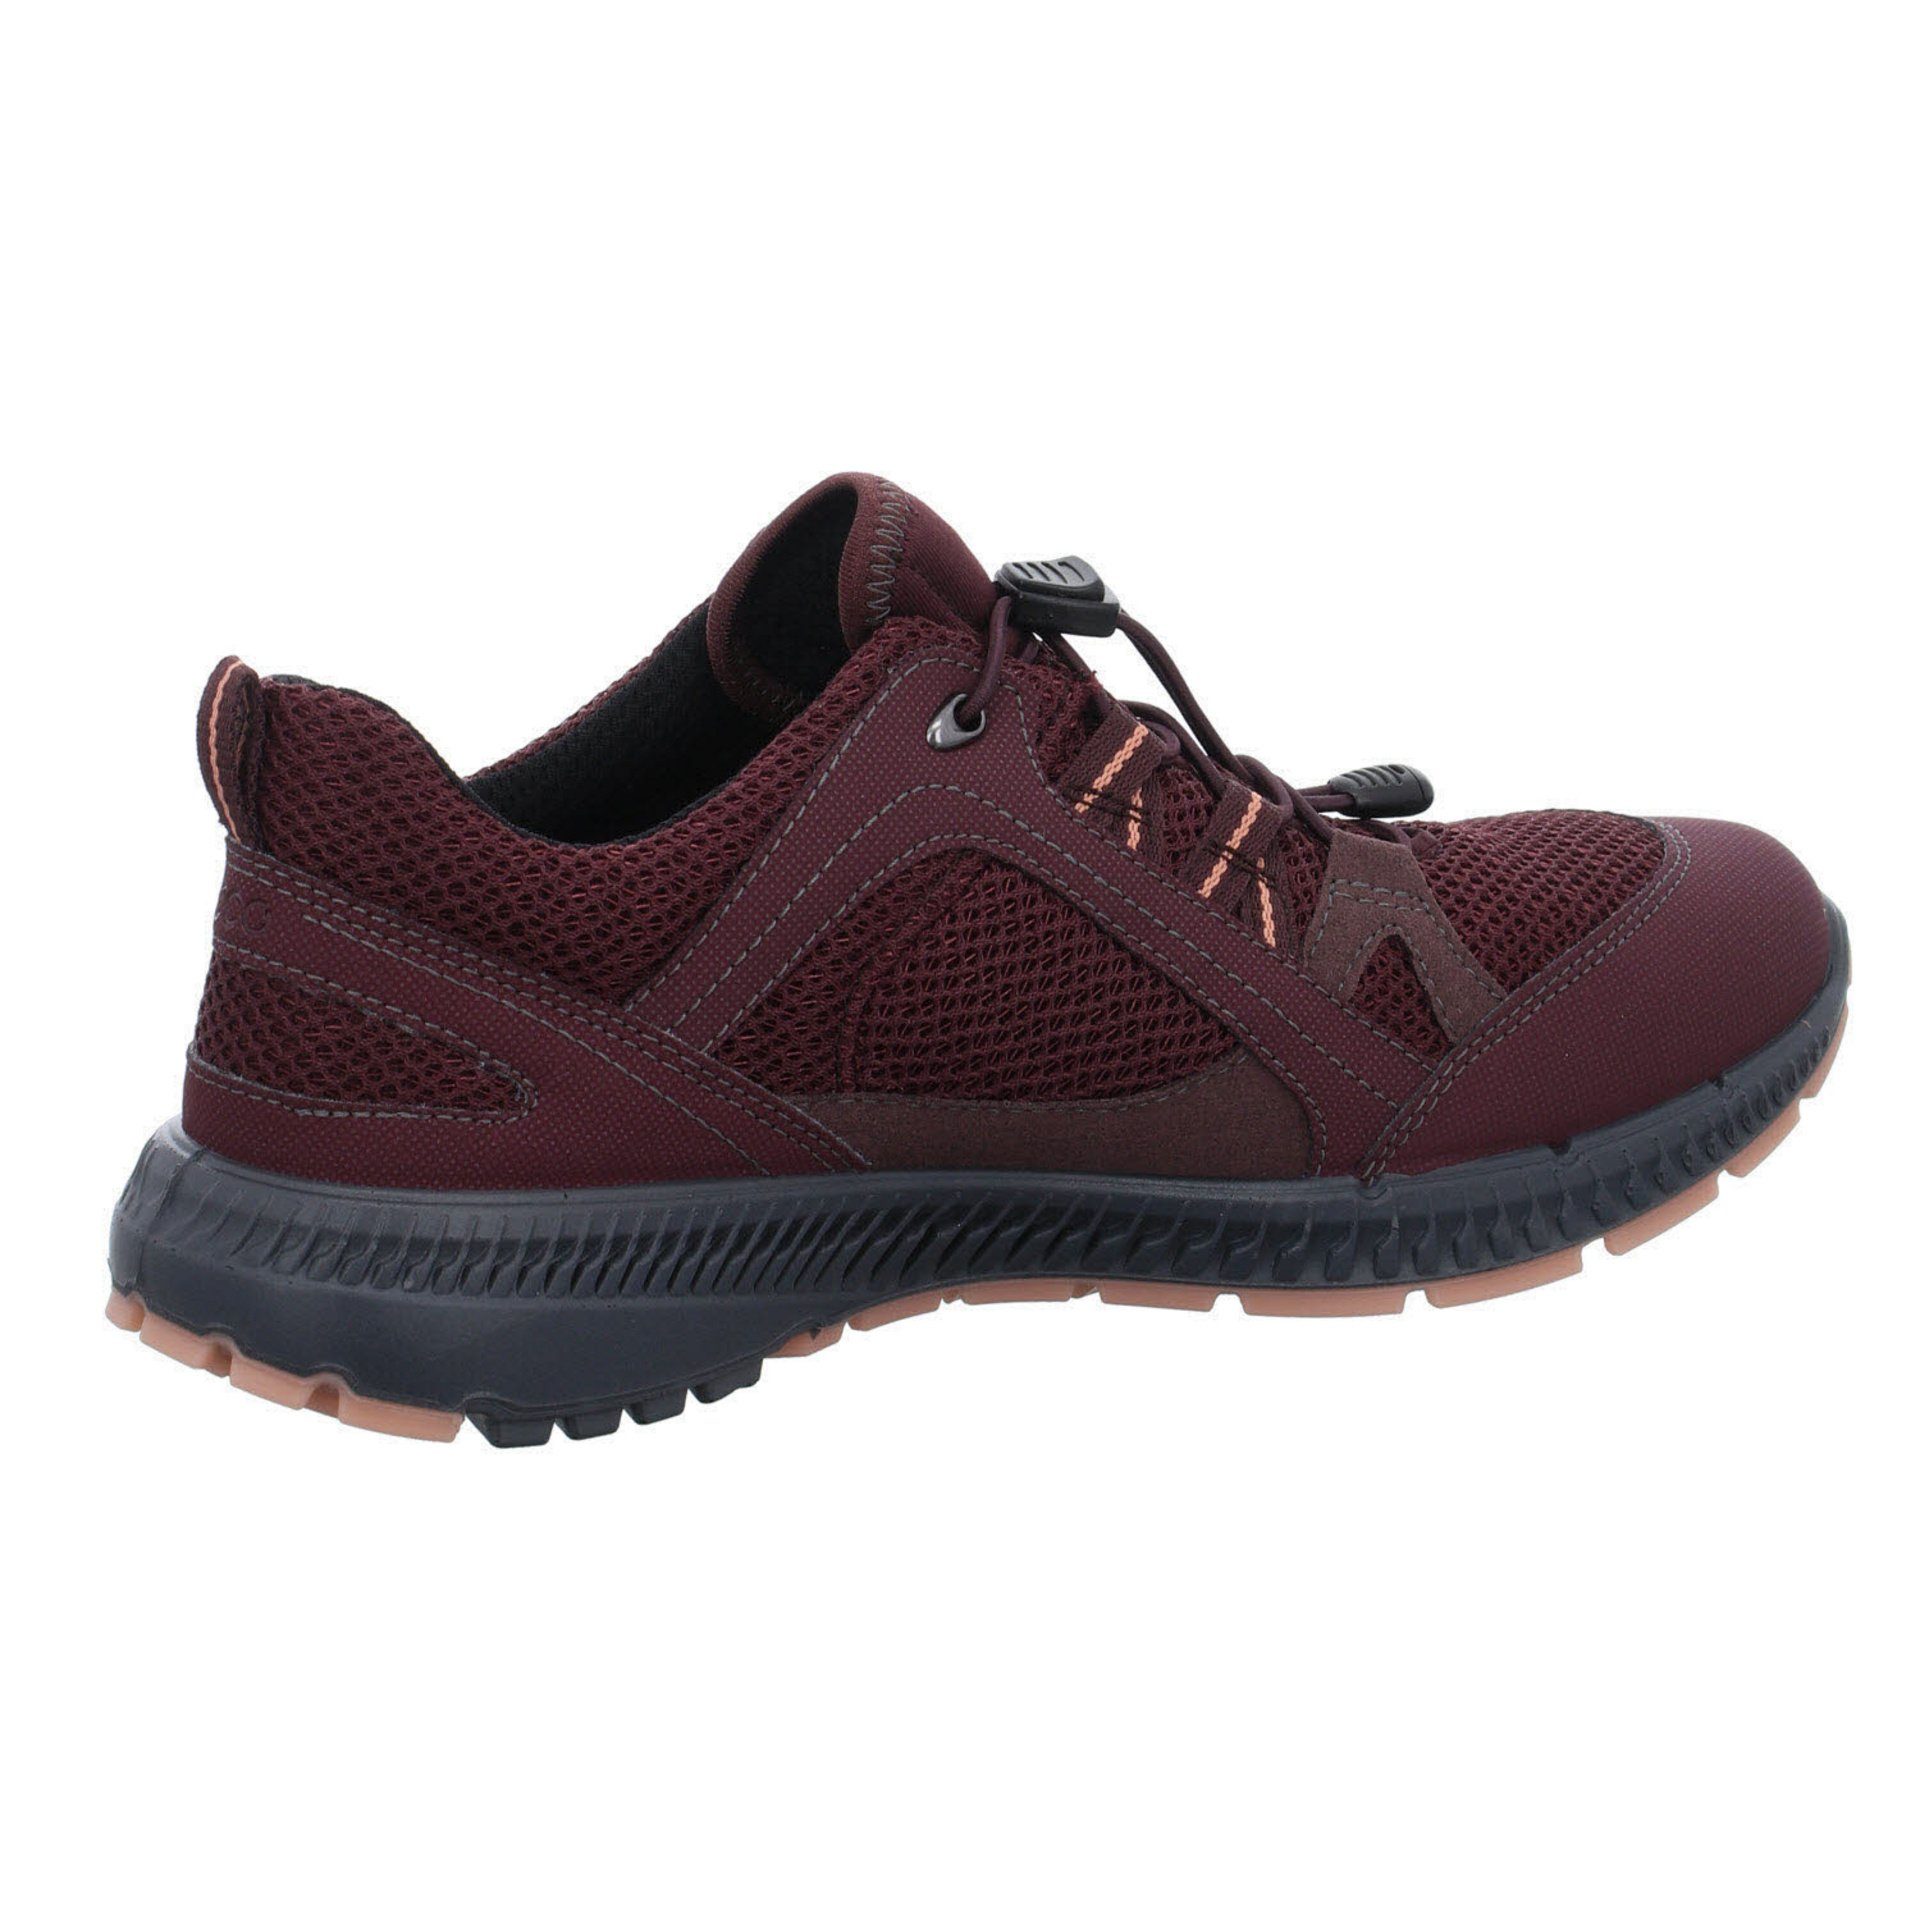 Damen Ecco Outdoor FIG/FIG Terracruise Outdoorschuh GTX Synthetikkombination Outdoorschuh Schuhe